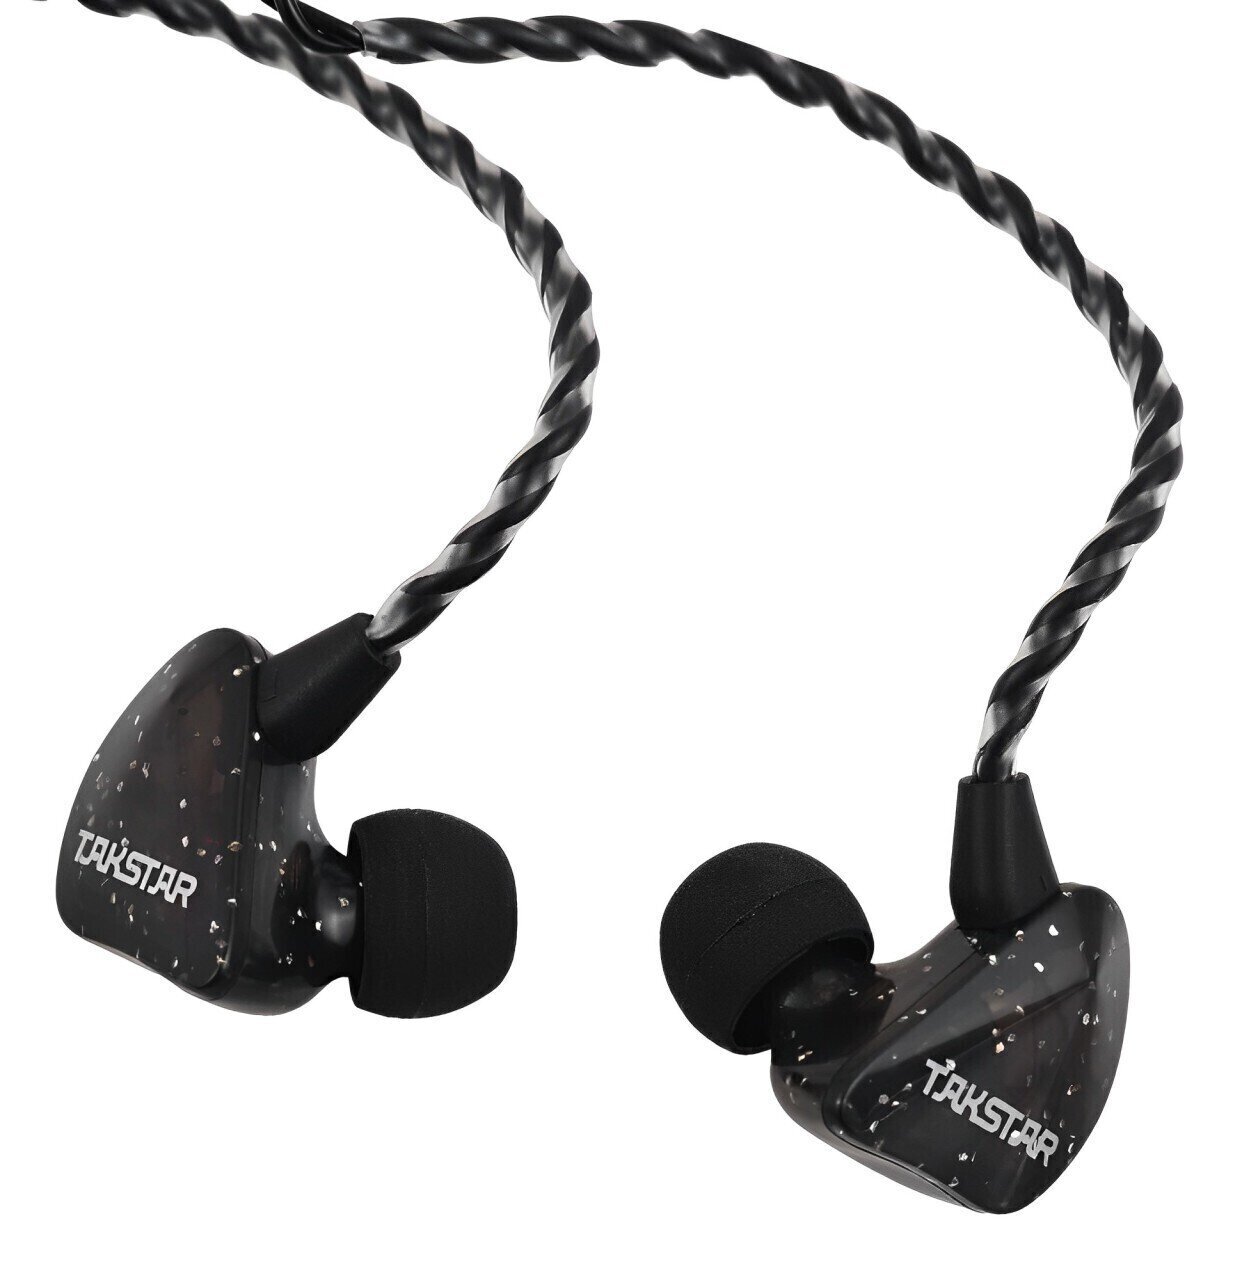 Ohrbügel-Kopfhörer Takstar TS-2300 Black In-Ear Monitor Earphones